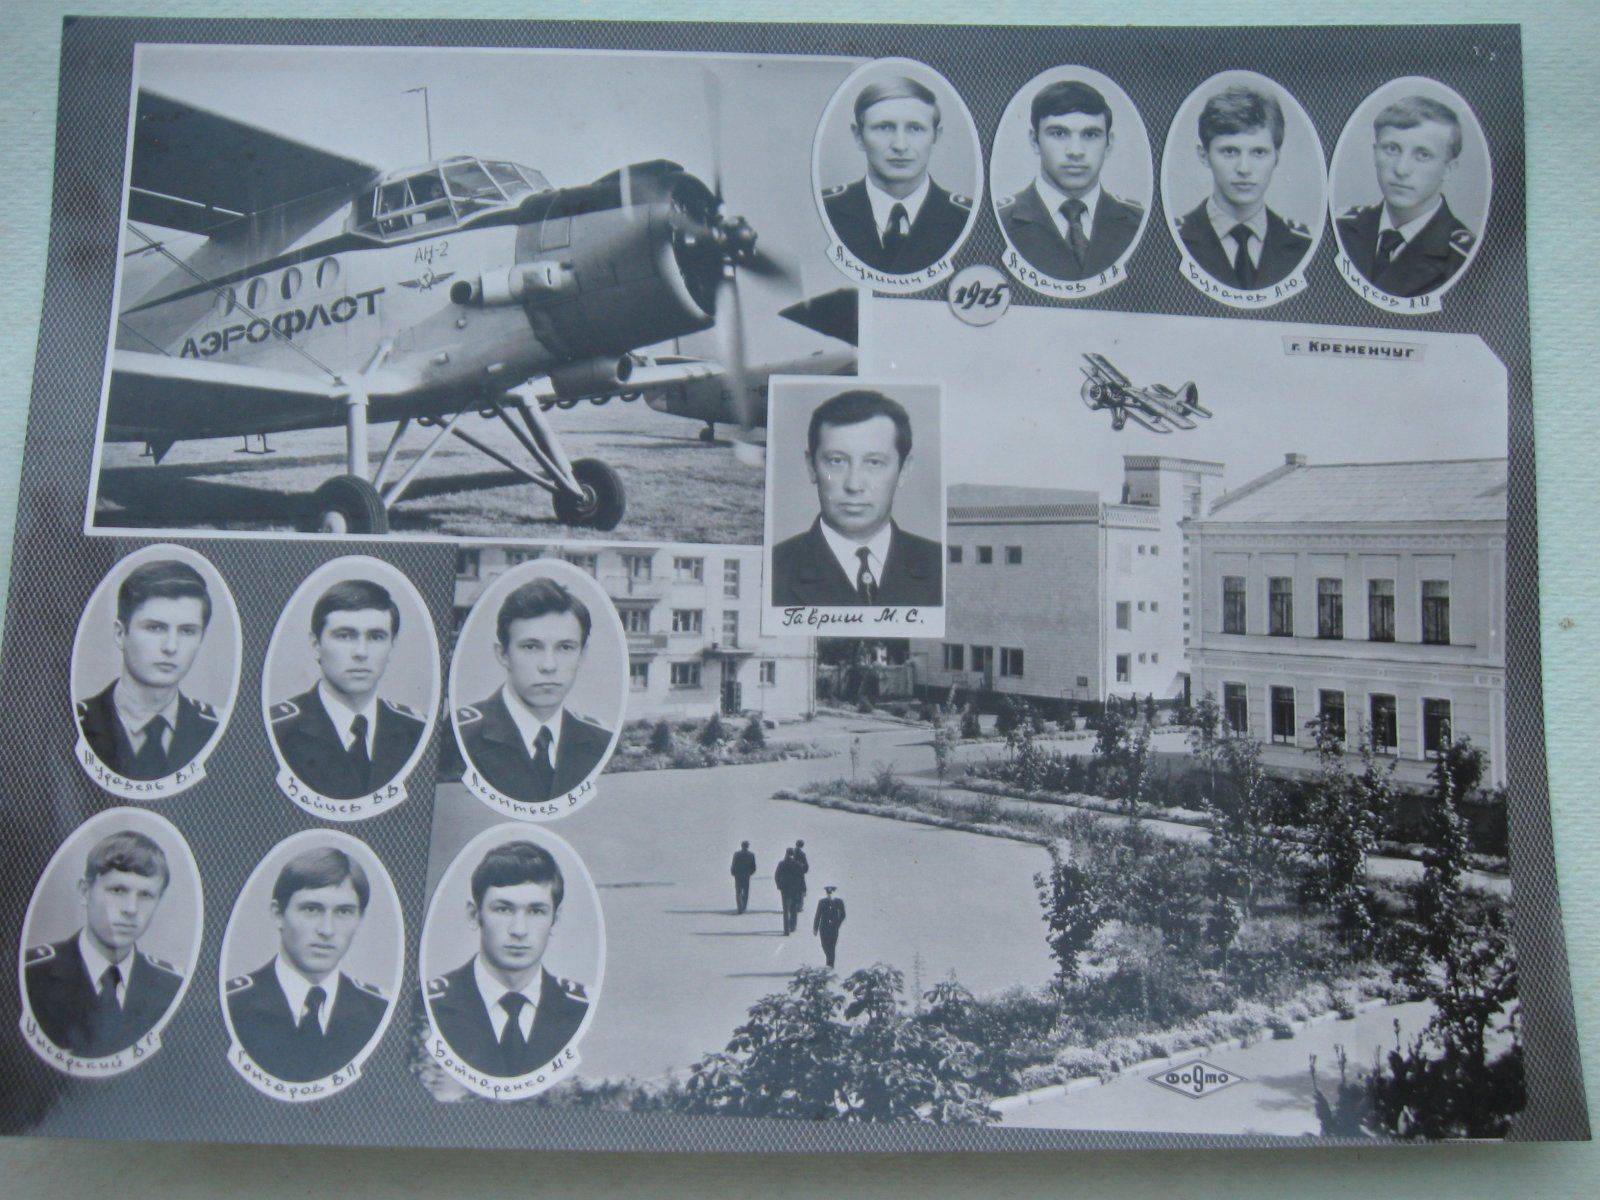 Кременчугский летный колледж национального авиационного университета - kremenchuk flight college of national aviation university - abcdef.wiki